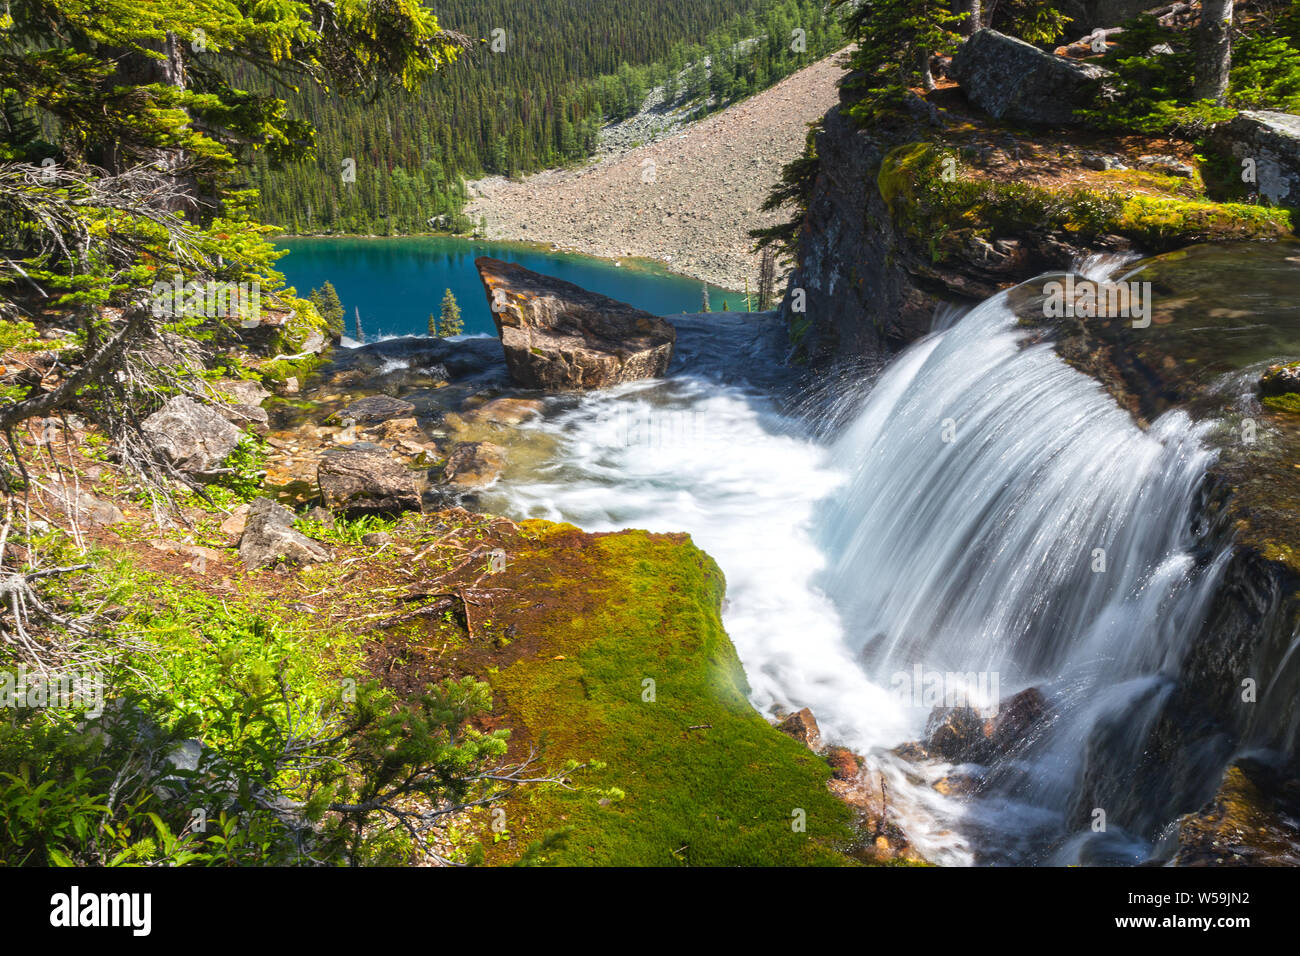 Schönen Wasserfall, Moos und Blau Ägypten See Landschaft Banff Nationalpark in den Kanadischen Rocky Mountains Stockfoto